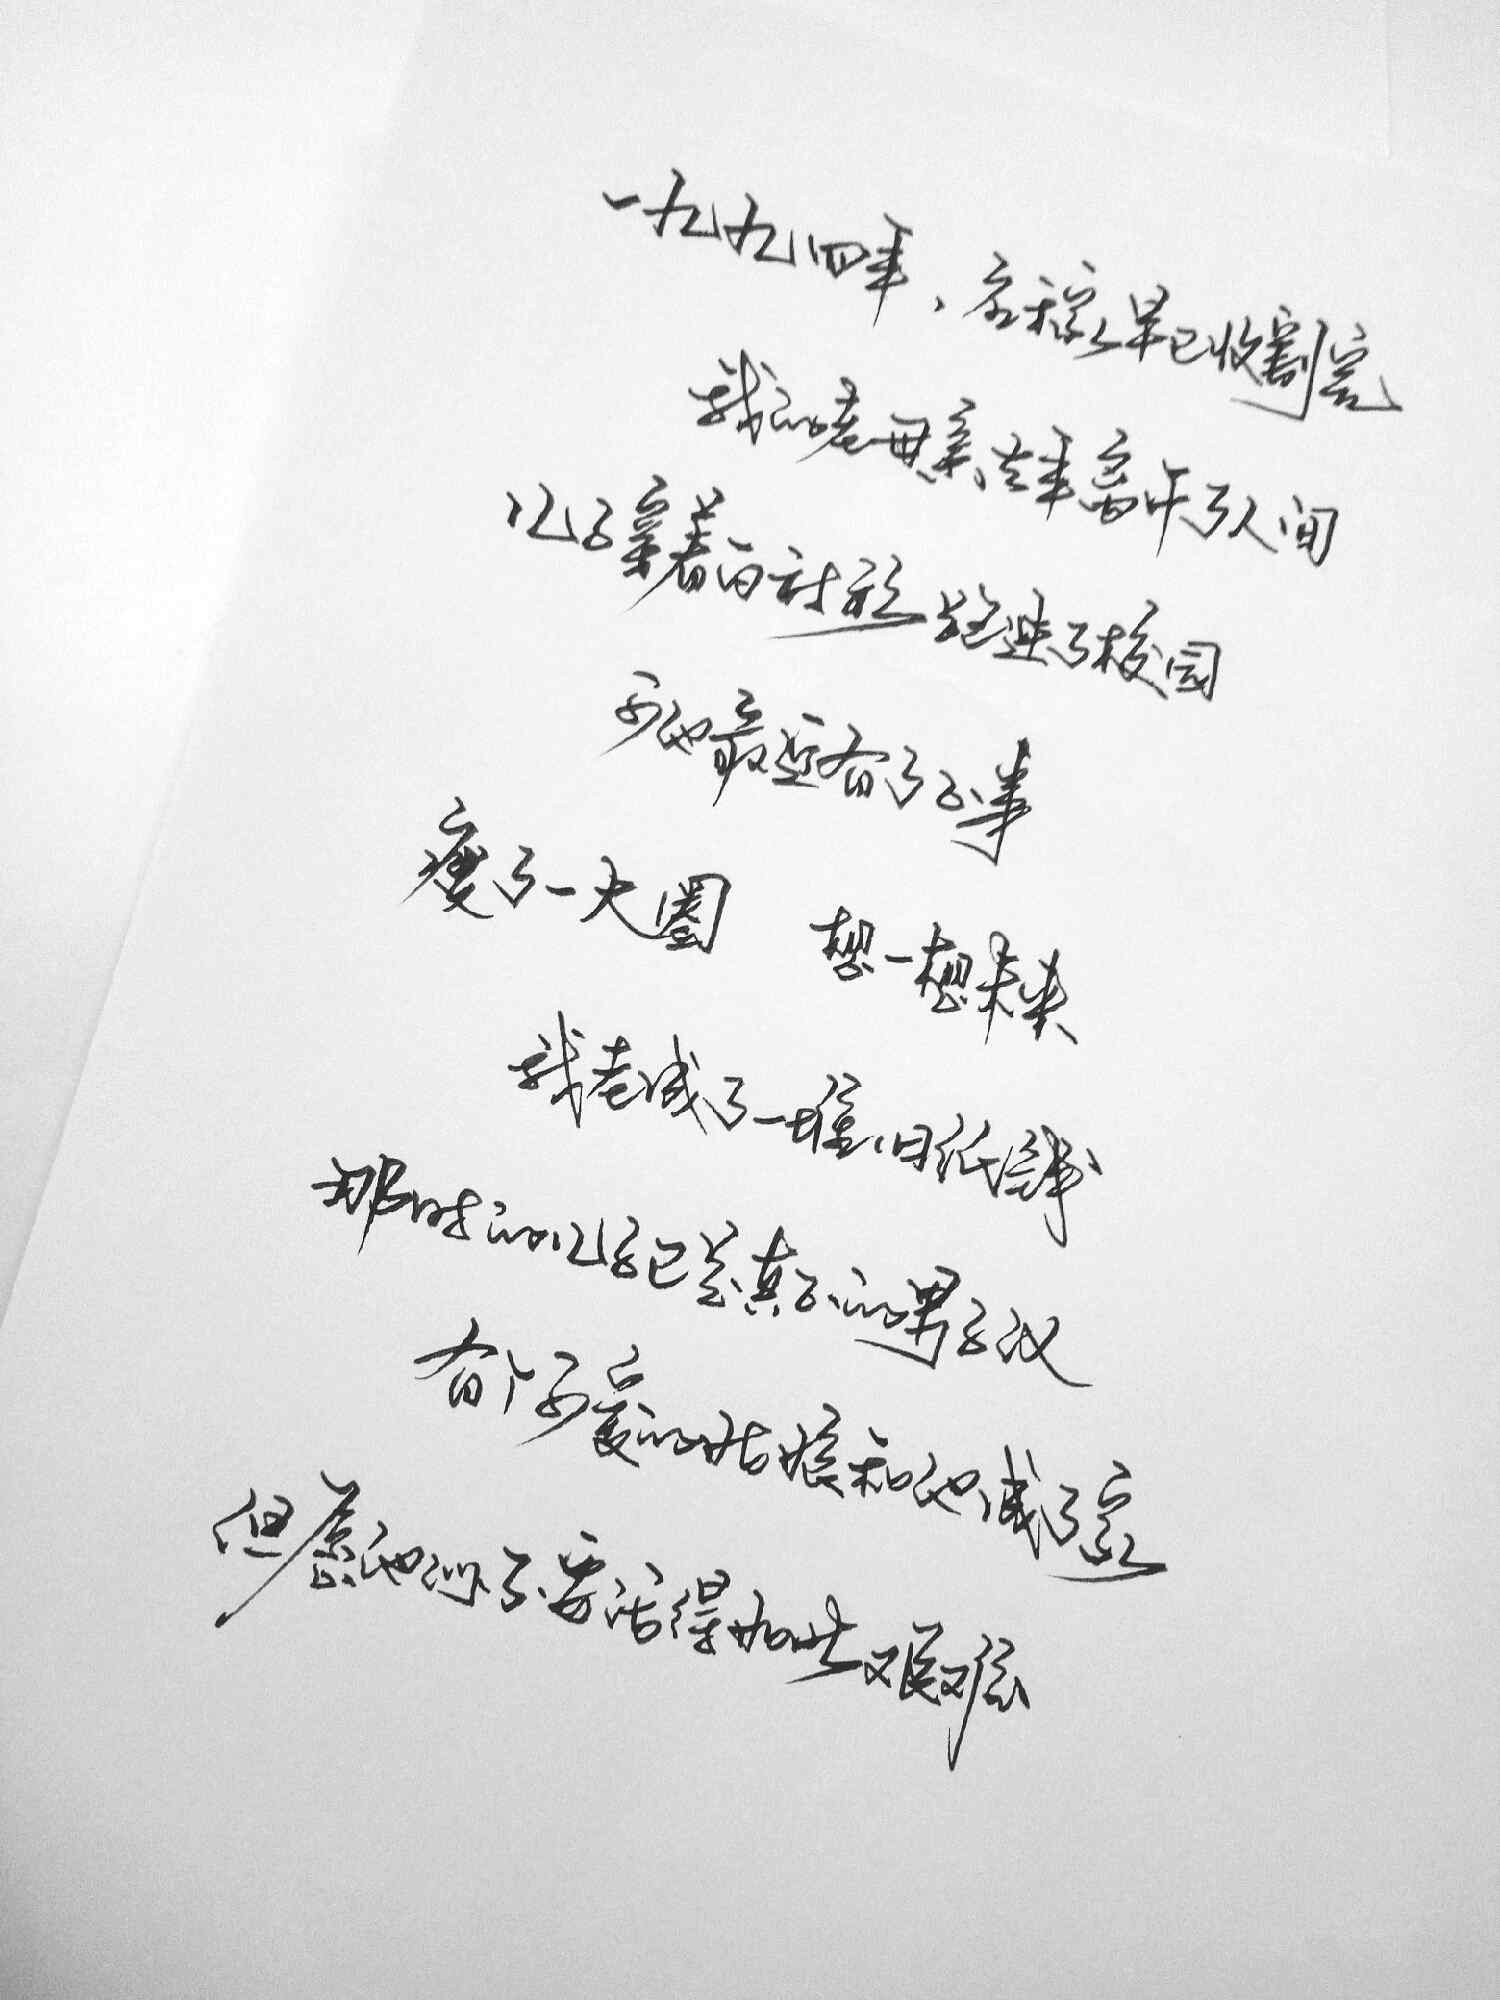 李健父亲写的散文诗手写手机壁纸